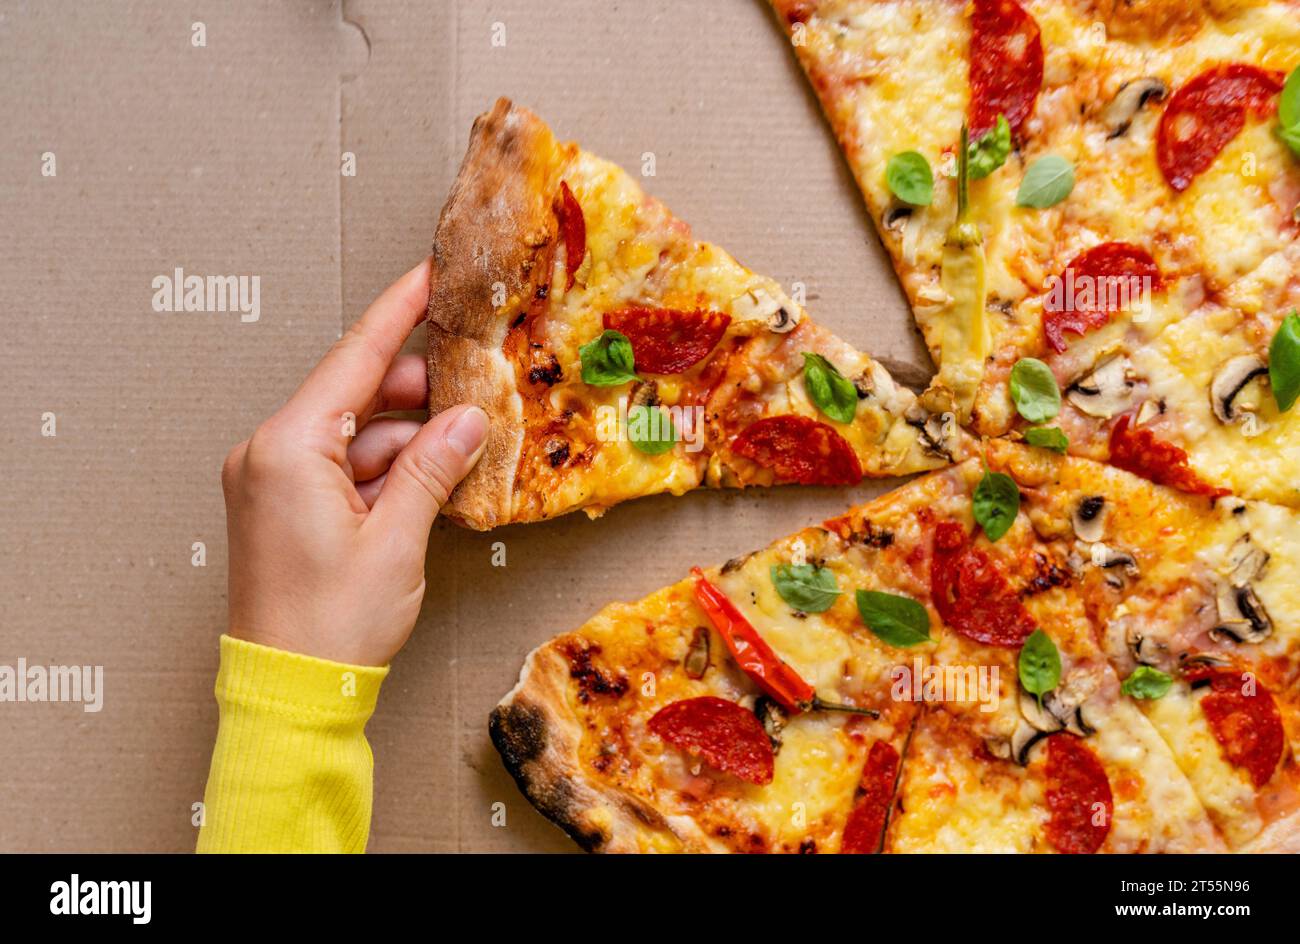 La main féminine prend un morceau de pizza. Vue à angle élevé de pizza au pepperoni et basilic. Banque D'Images